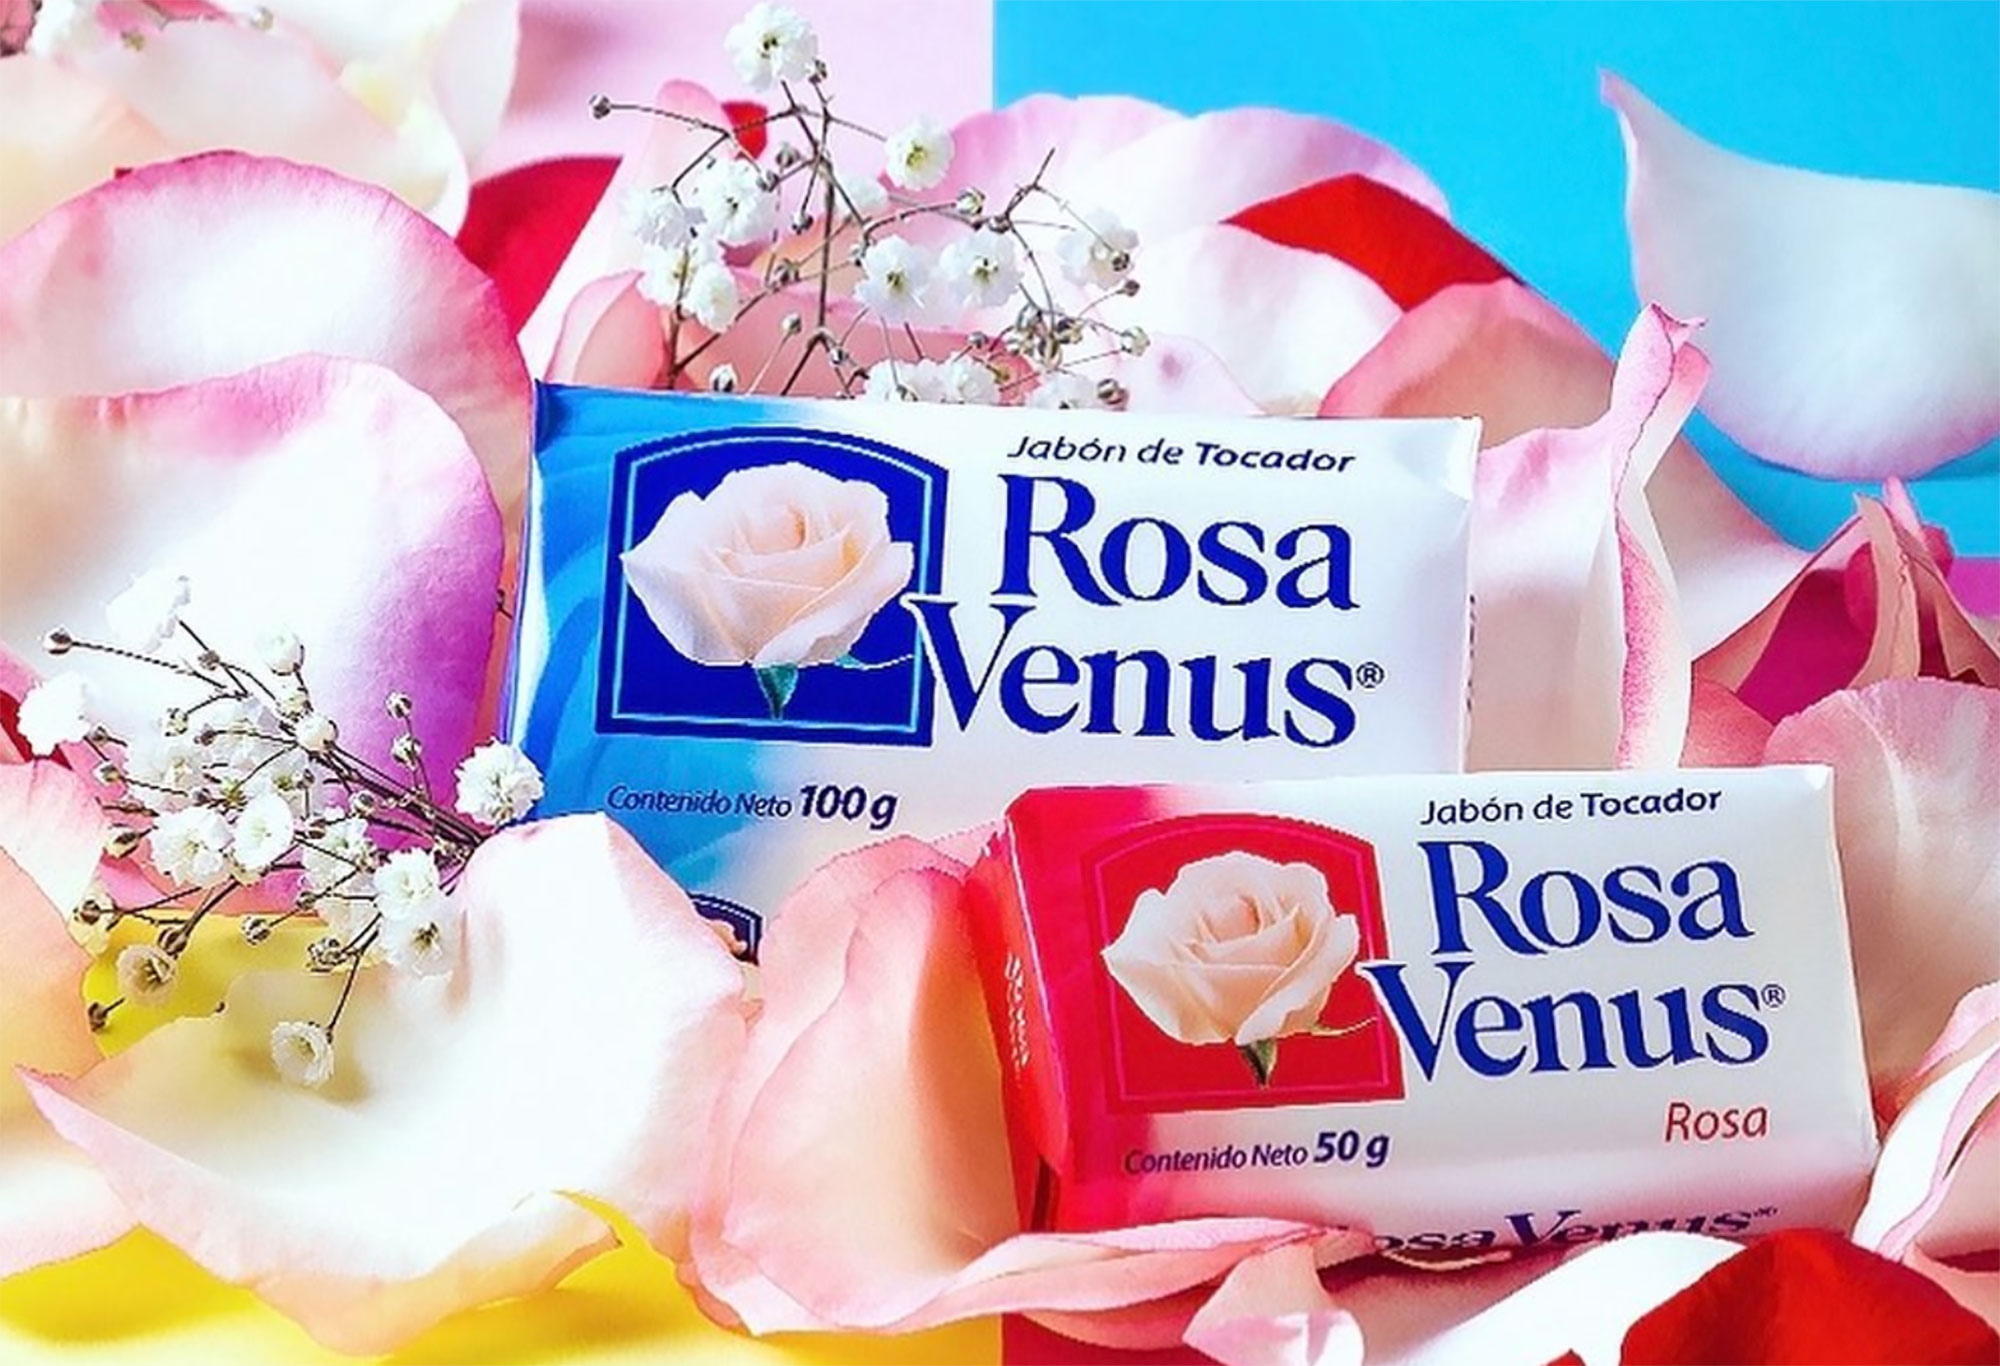 Jabón Rosa Venus, la historia del producto que delata a los 'enamorados'